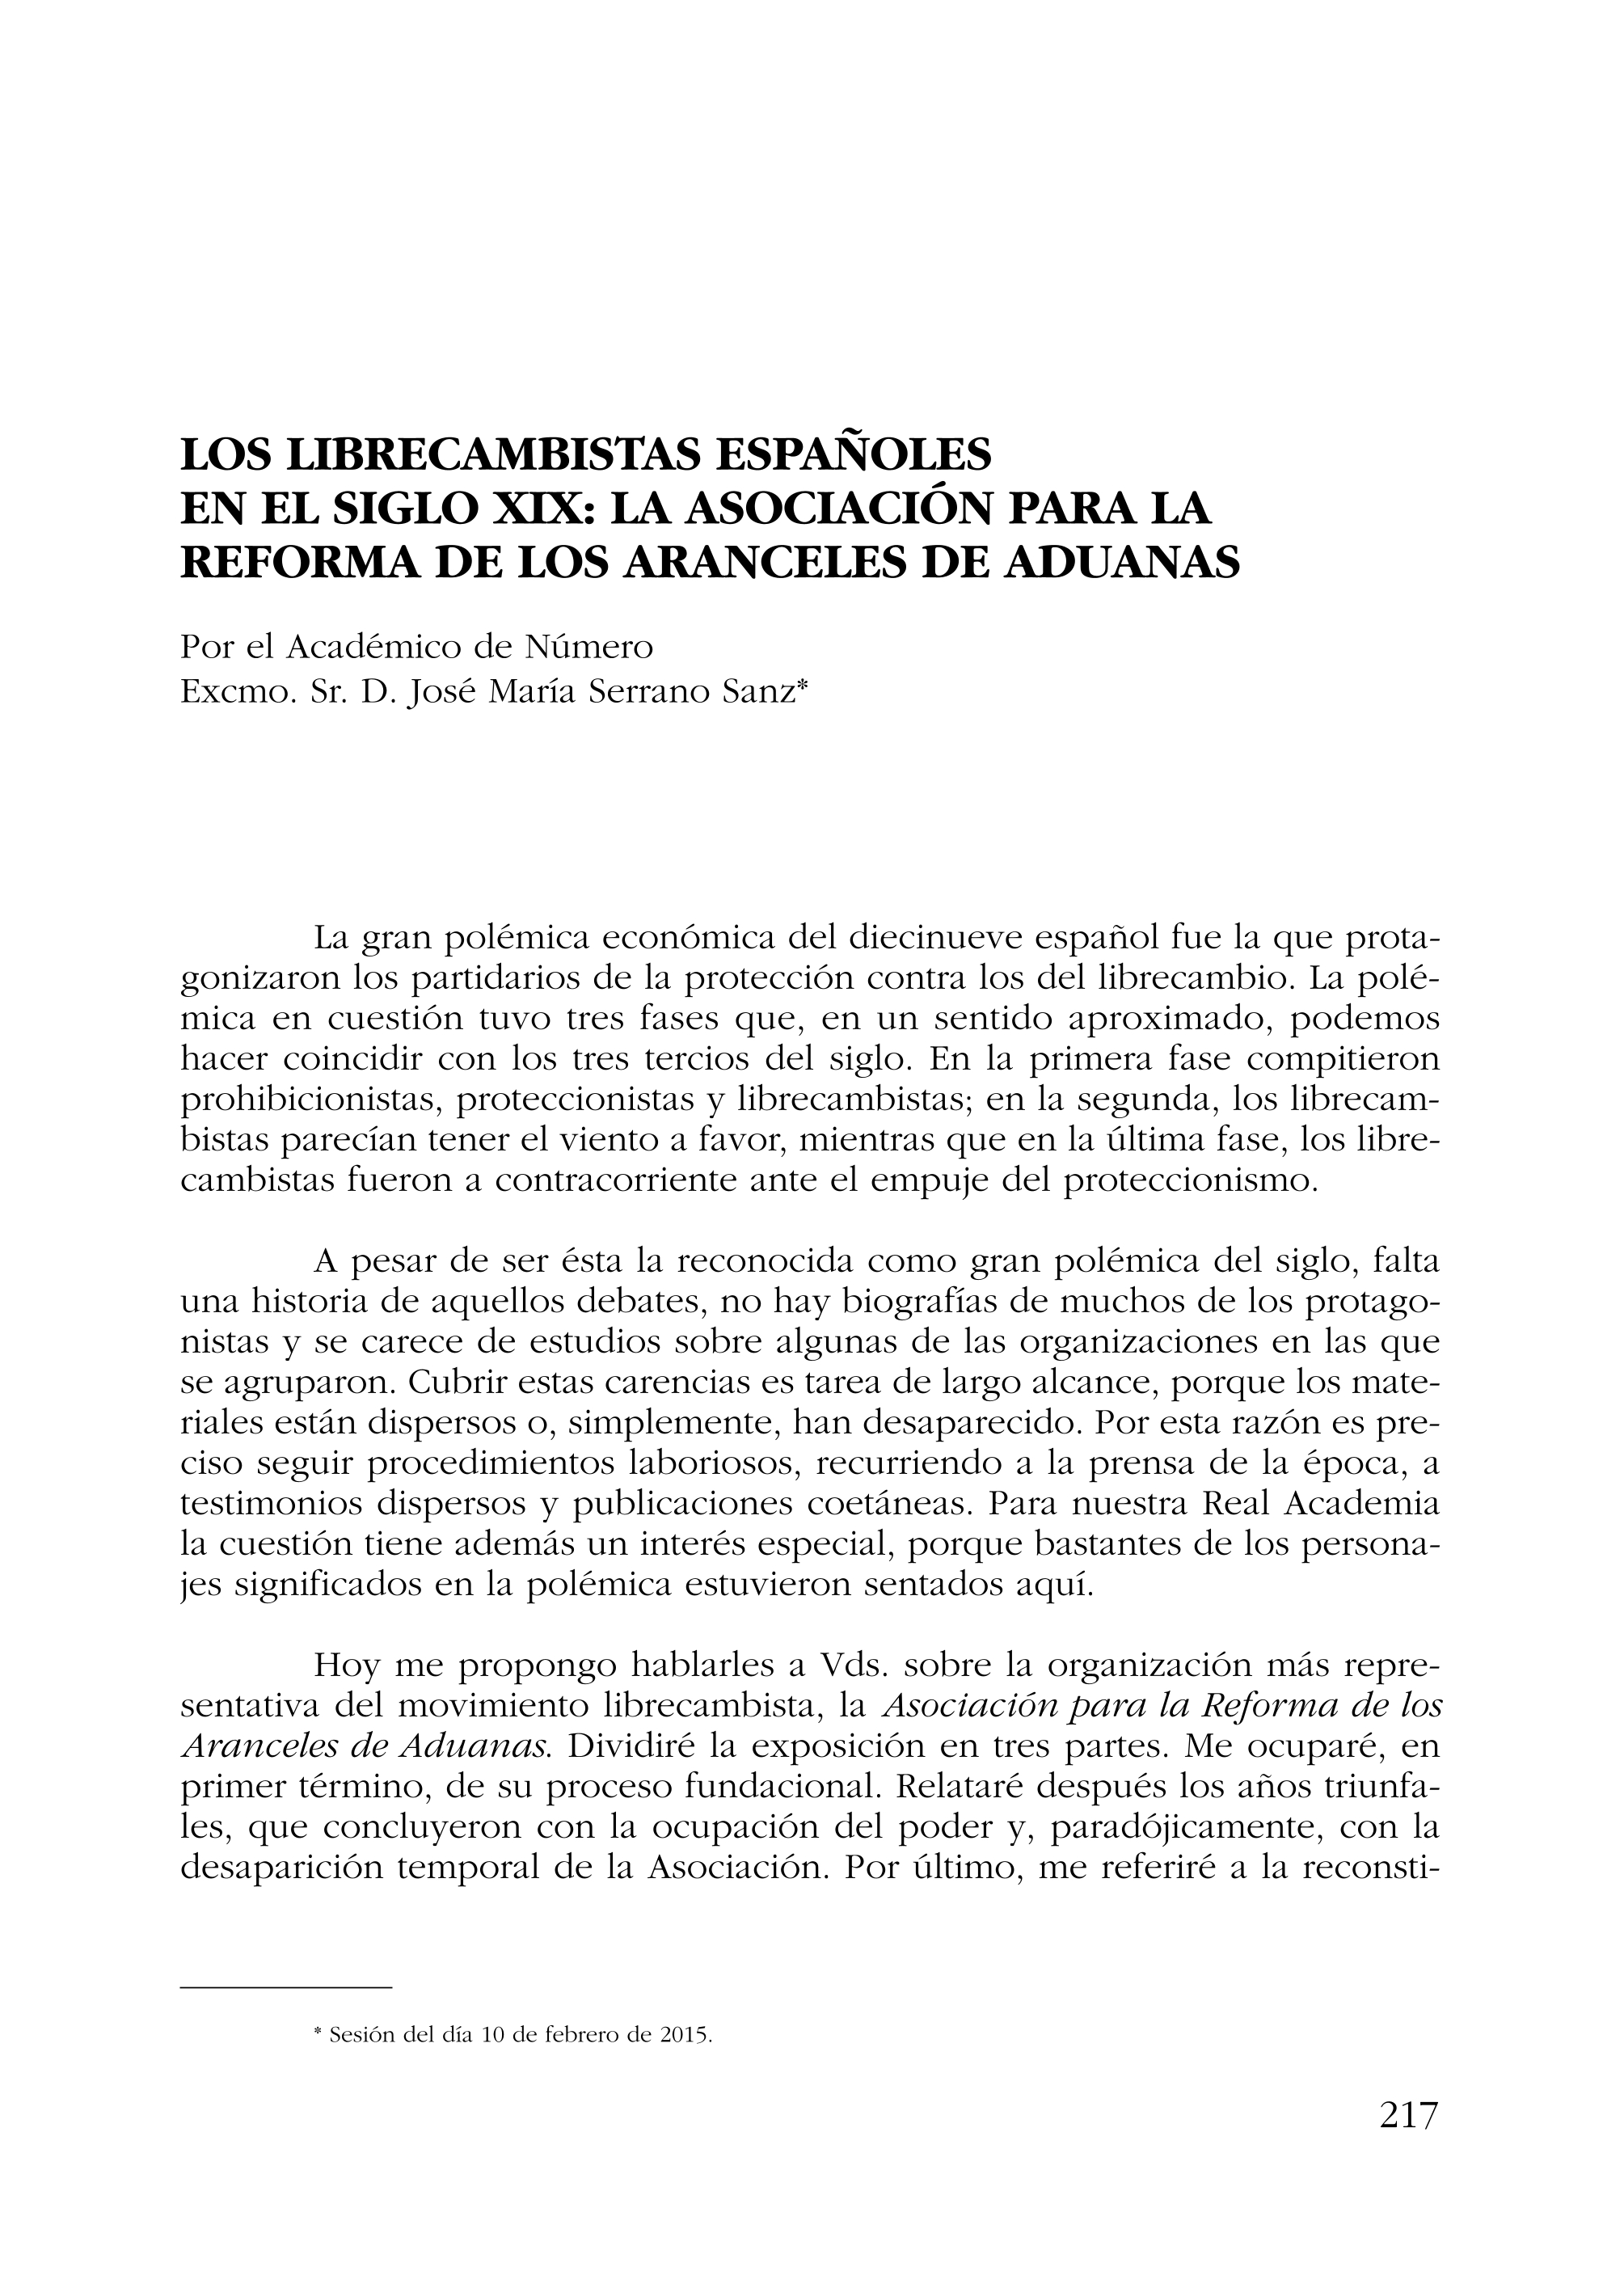 Los librecambistas españoles en el siglo XIX